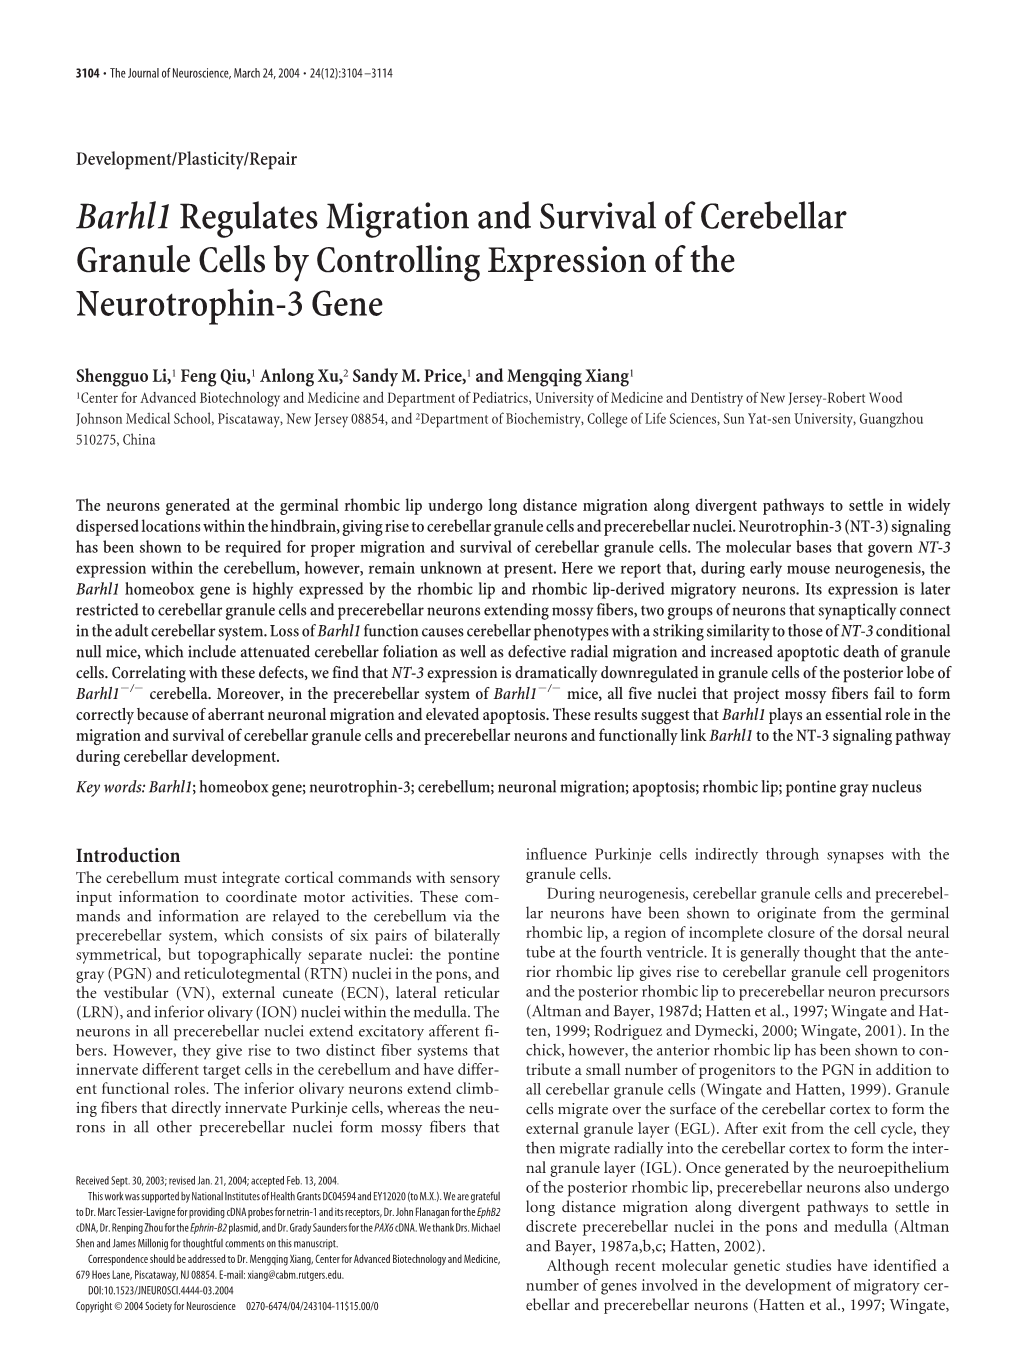 Barhl1regulates Migration and Survival of Cerebellar Granule